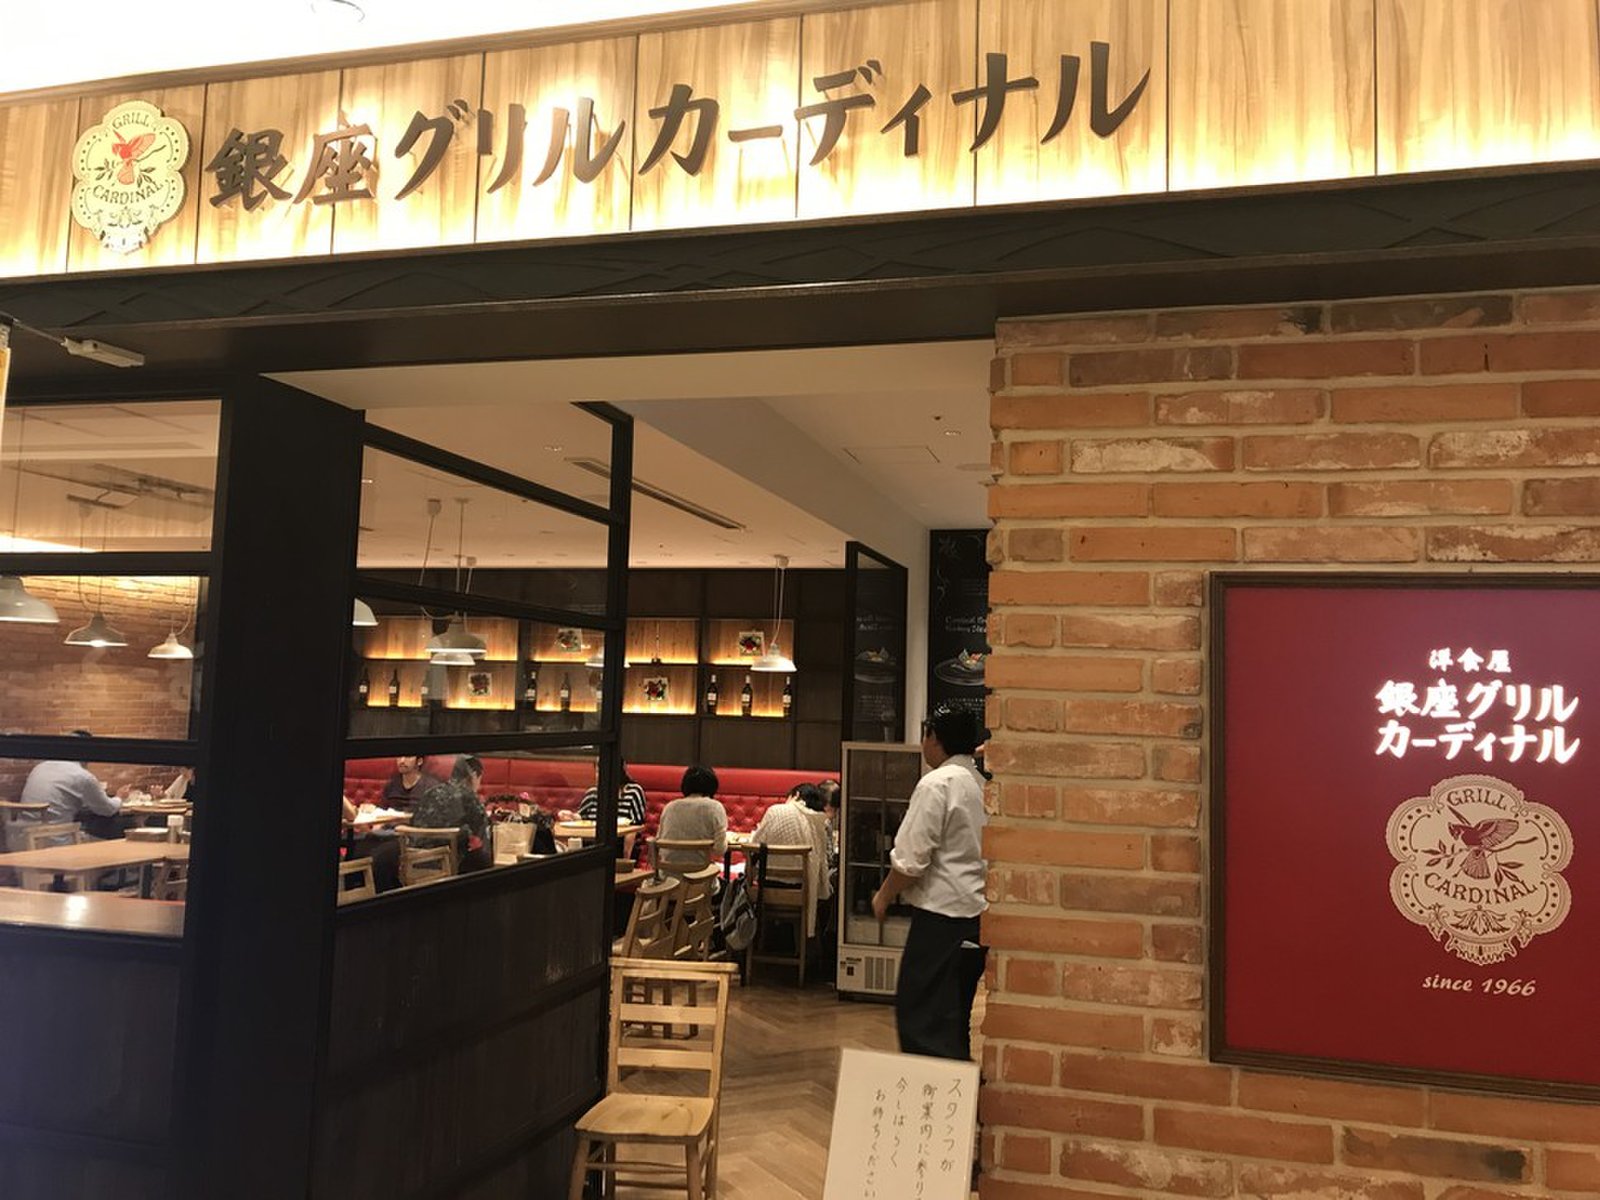 東京スカイツリー 実際に行ったおいしいレストランおすすめ3店舗 押上おすすめレストラン Playlife プレイライフ